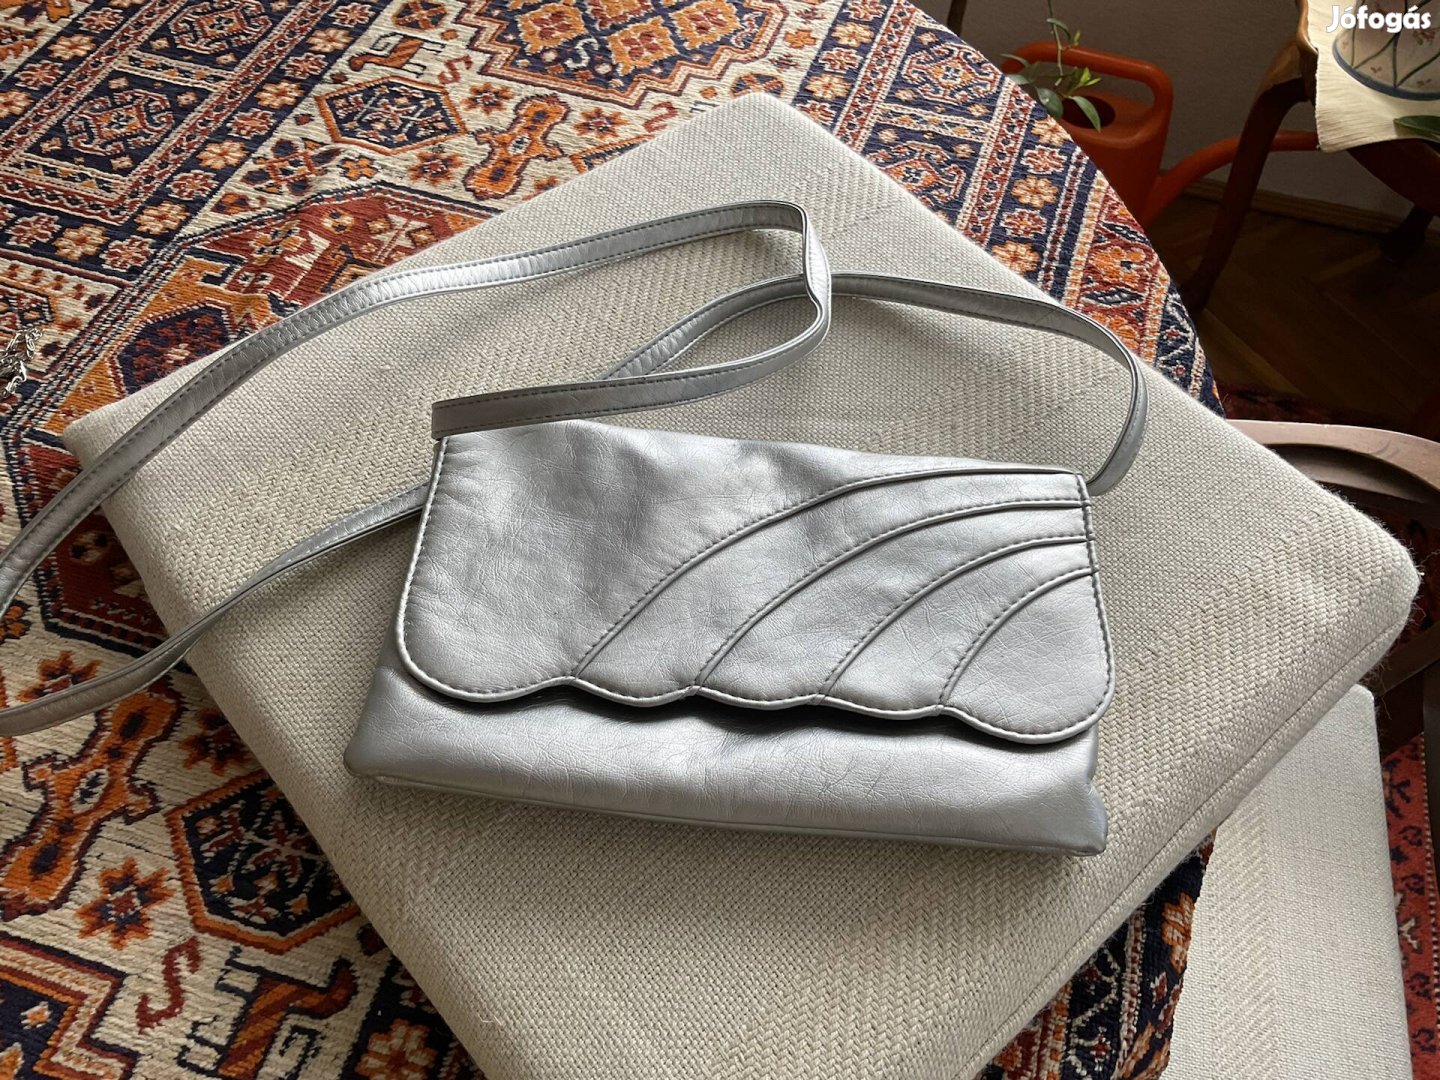 Ezüst színű régi bőr táska